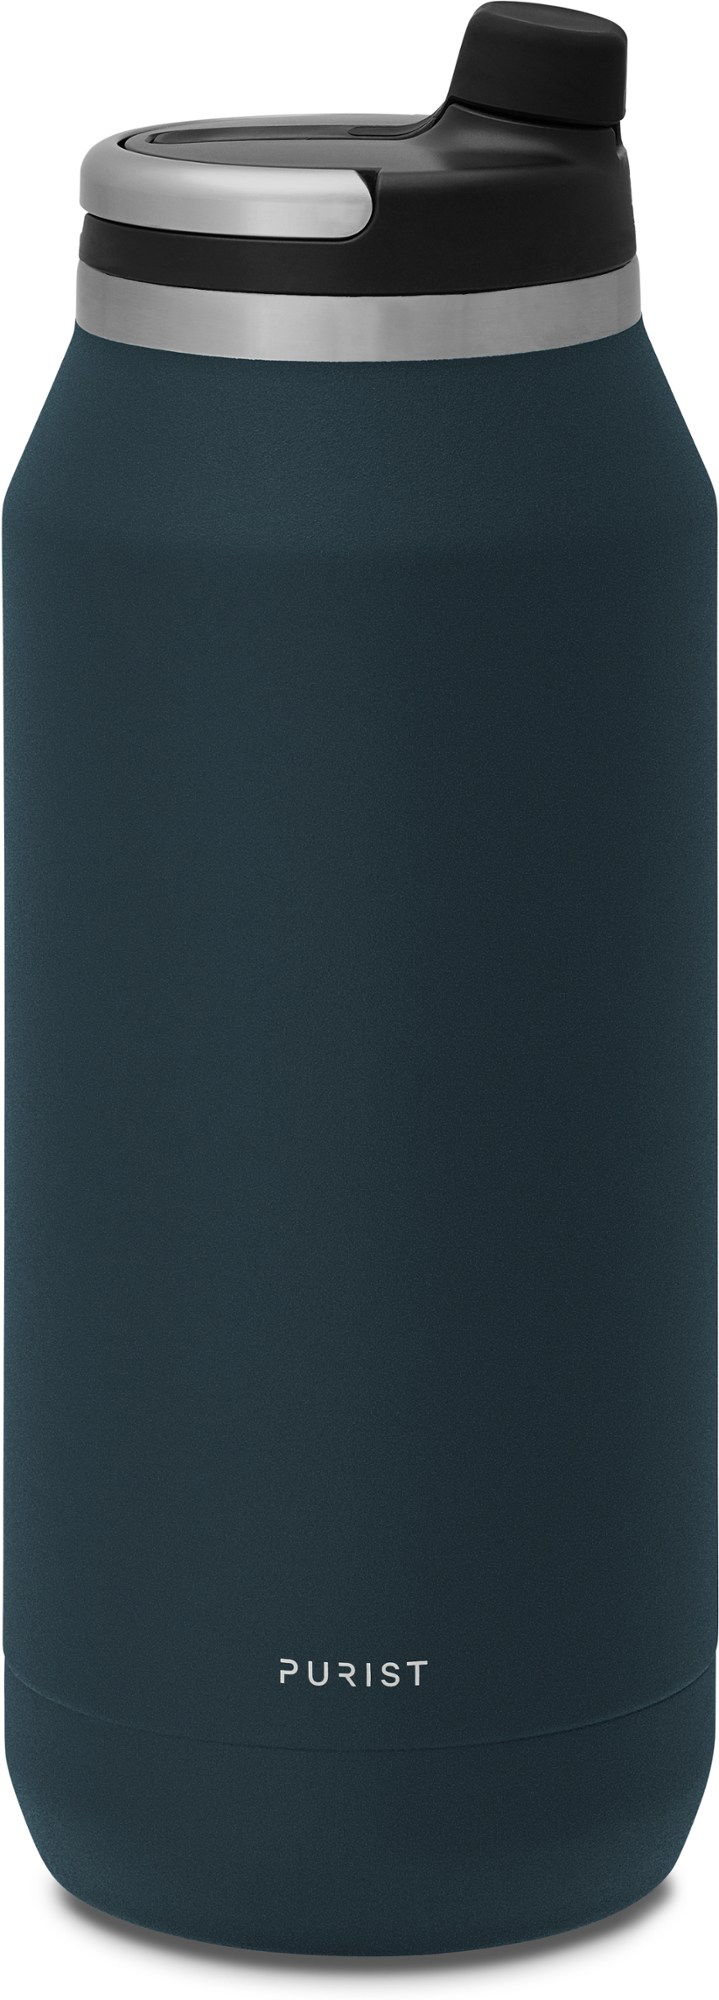 Вакуумная бутылка для воды Founder с крышкой Union Top - 32 эт. унция Purist, синий 500 мл умный автомобильный термос чашка чай кофе вакуумная фляжка дисплей температуры умная бутылка для воды для seat fr leon mk2 mk3 5f 6